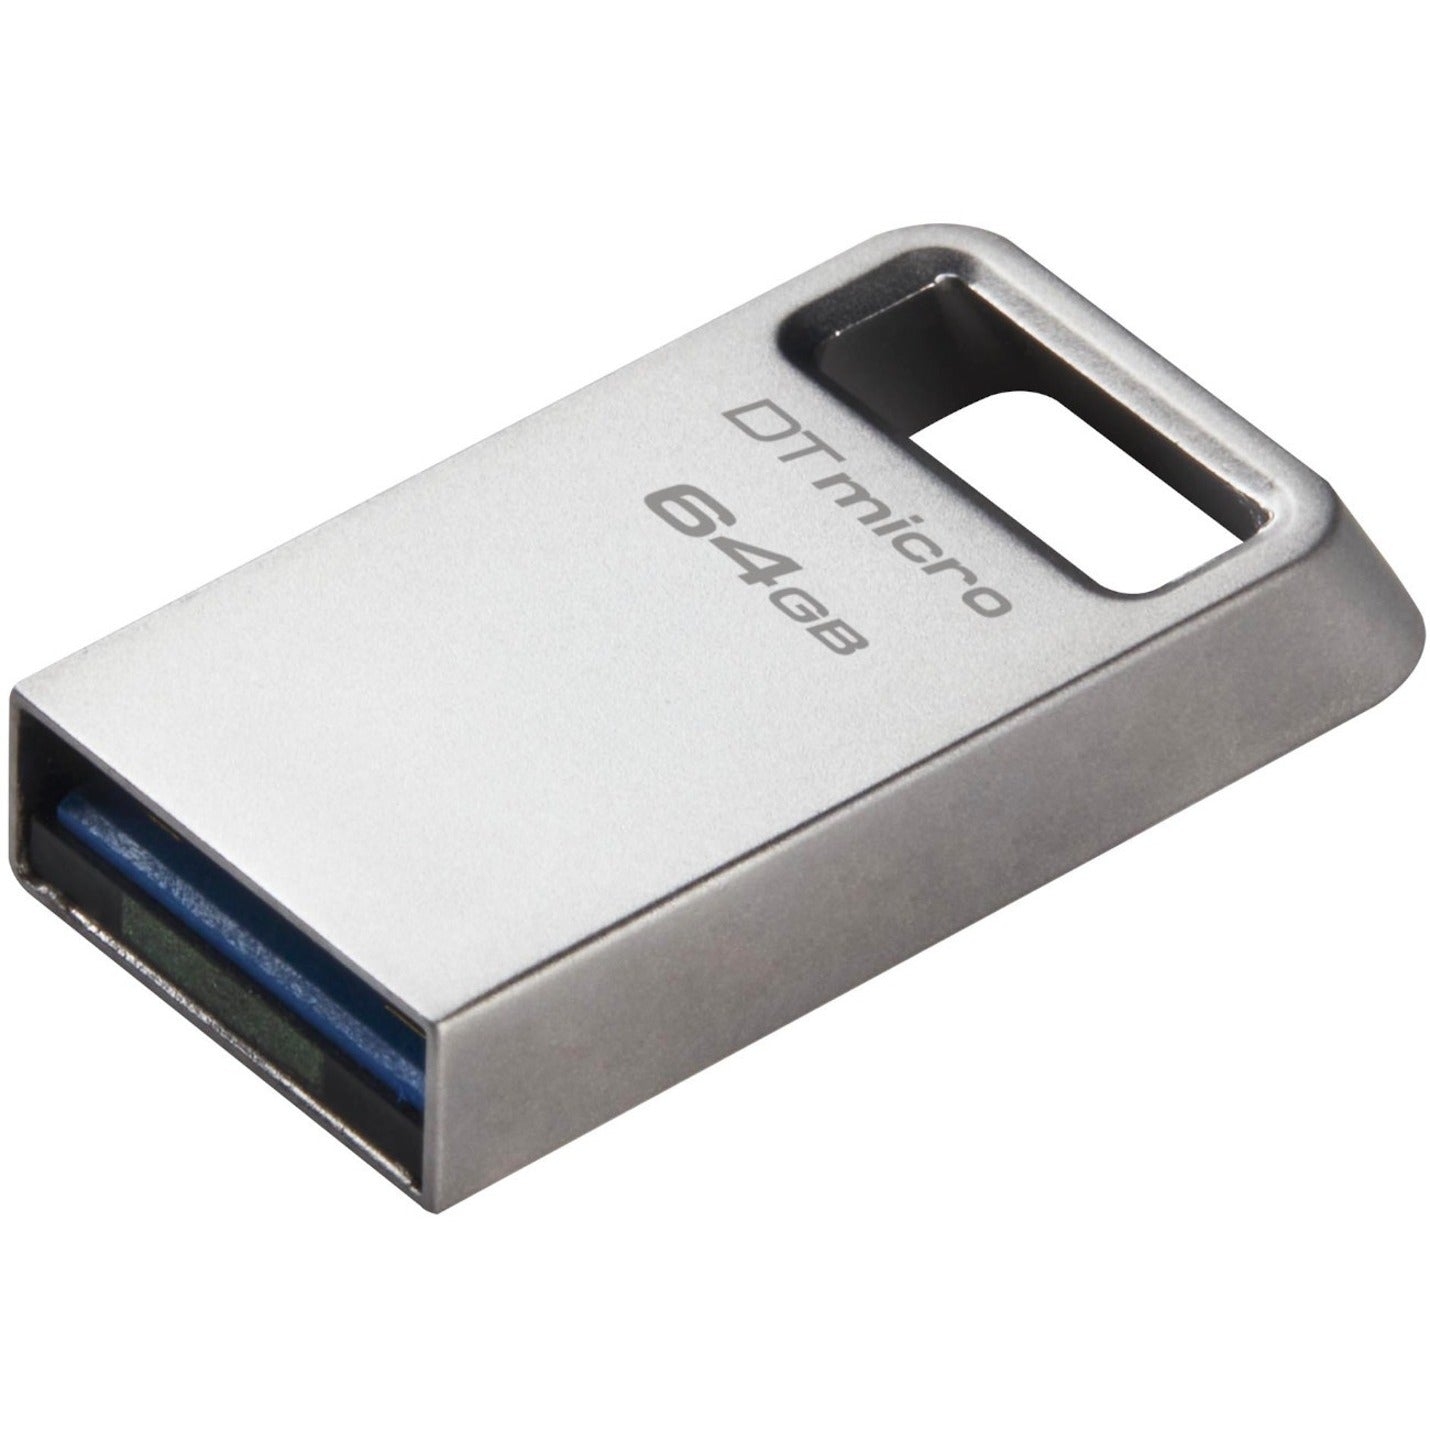 Kingston DTMC3G2/64GB DataTraveler Micro USB Flash Drive, 64GB Storage, 200 MB/s Read Speed